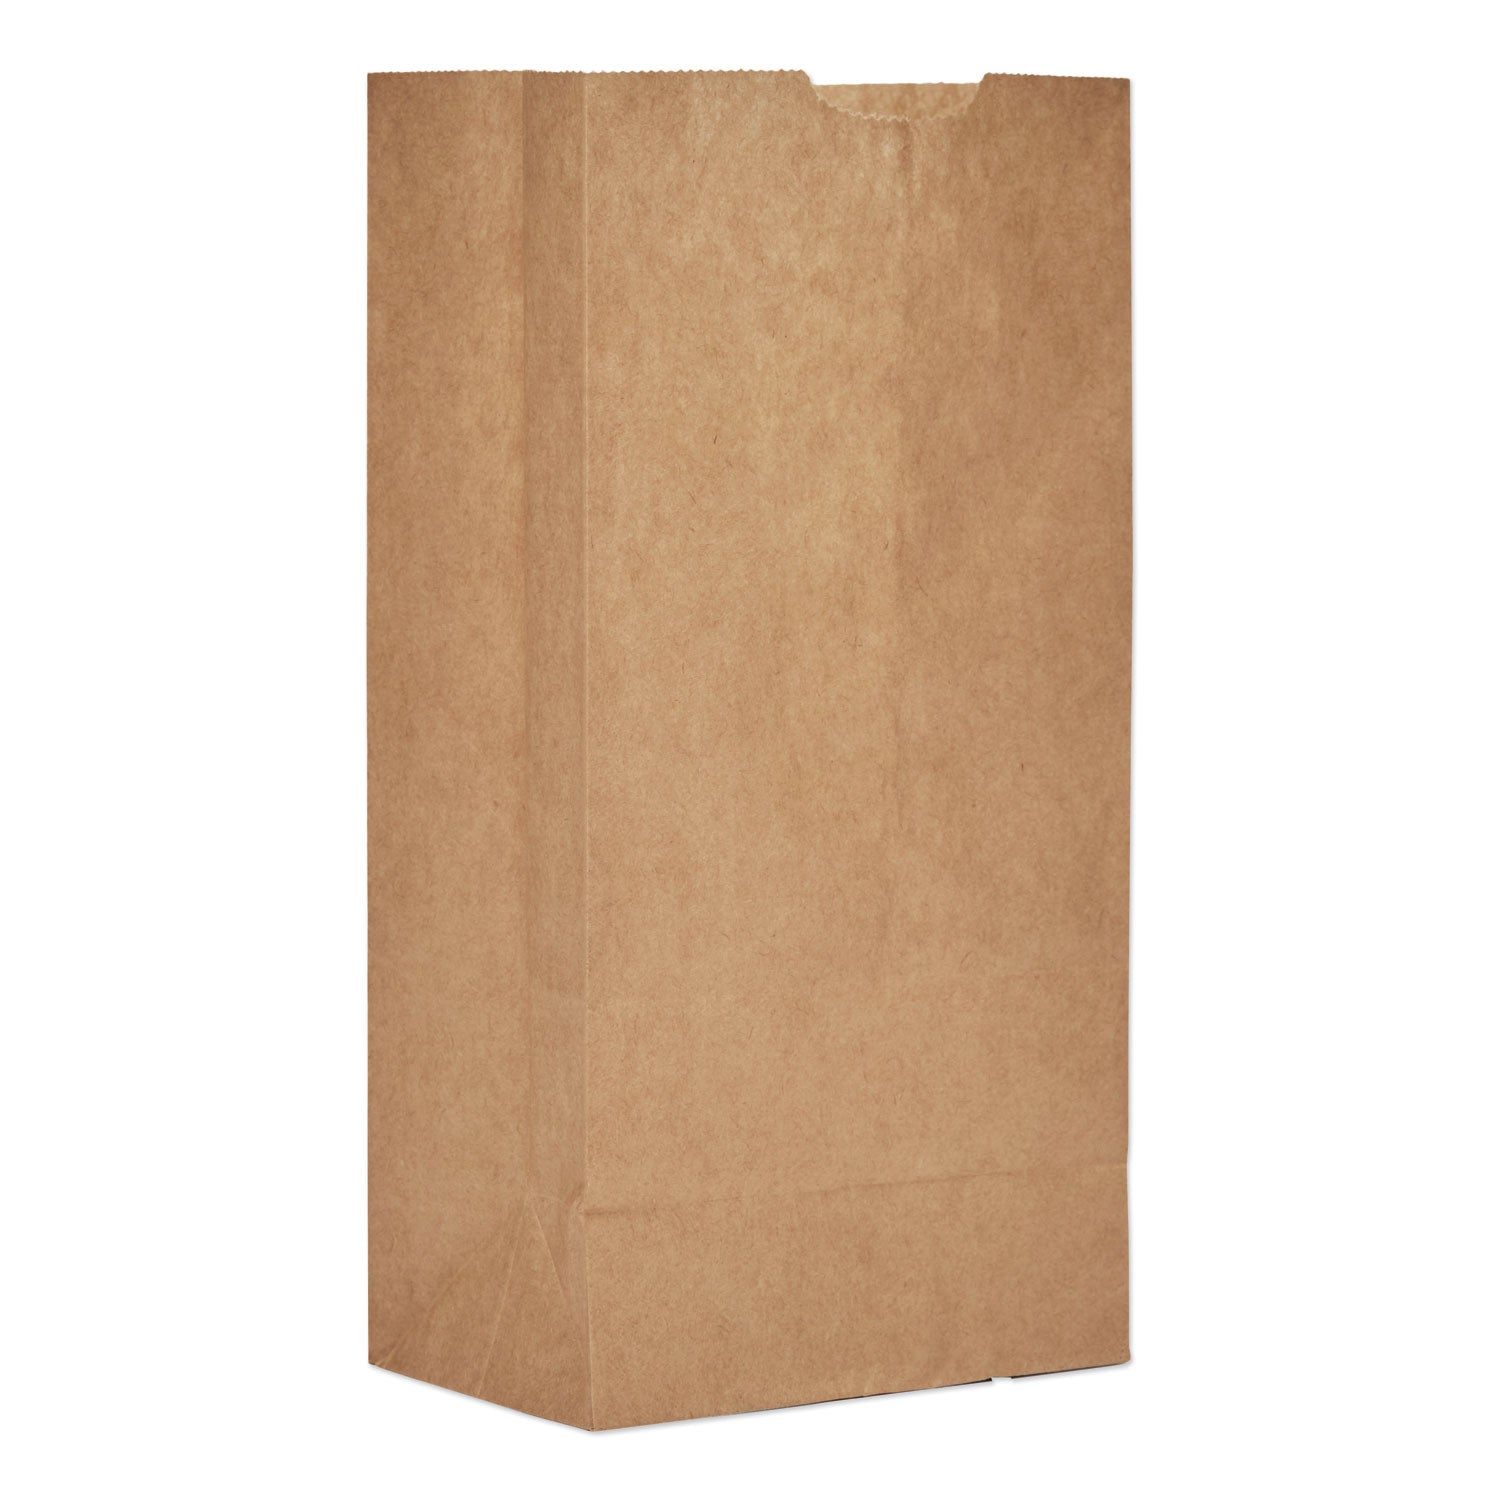 grocery-paper-bags-50-lb-capacity-#4-5-x-313-x-975-kraft-500-bags_baggx4500 - 1